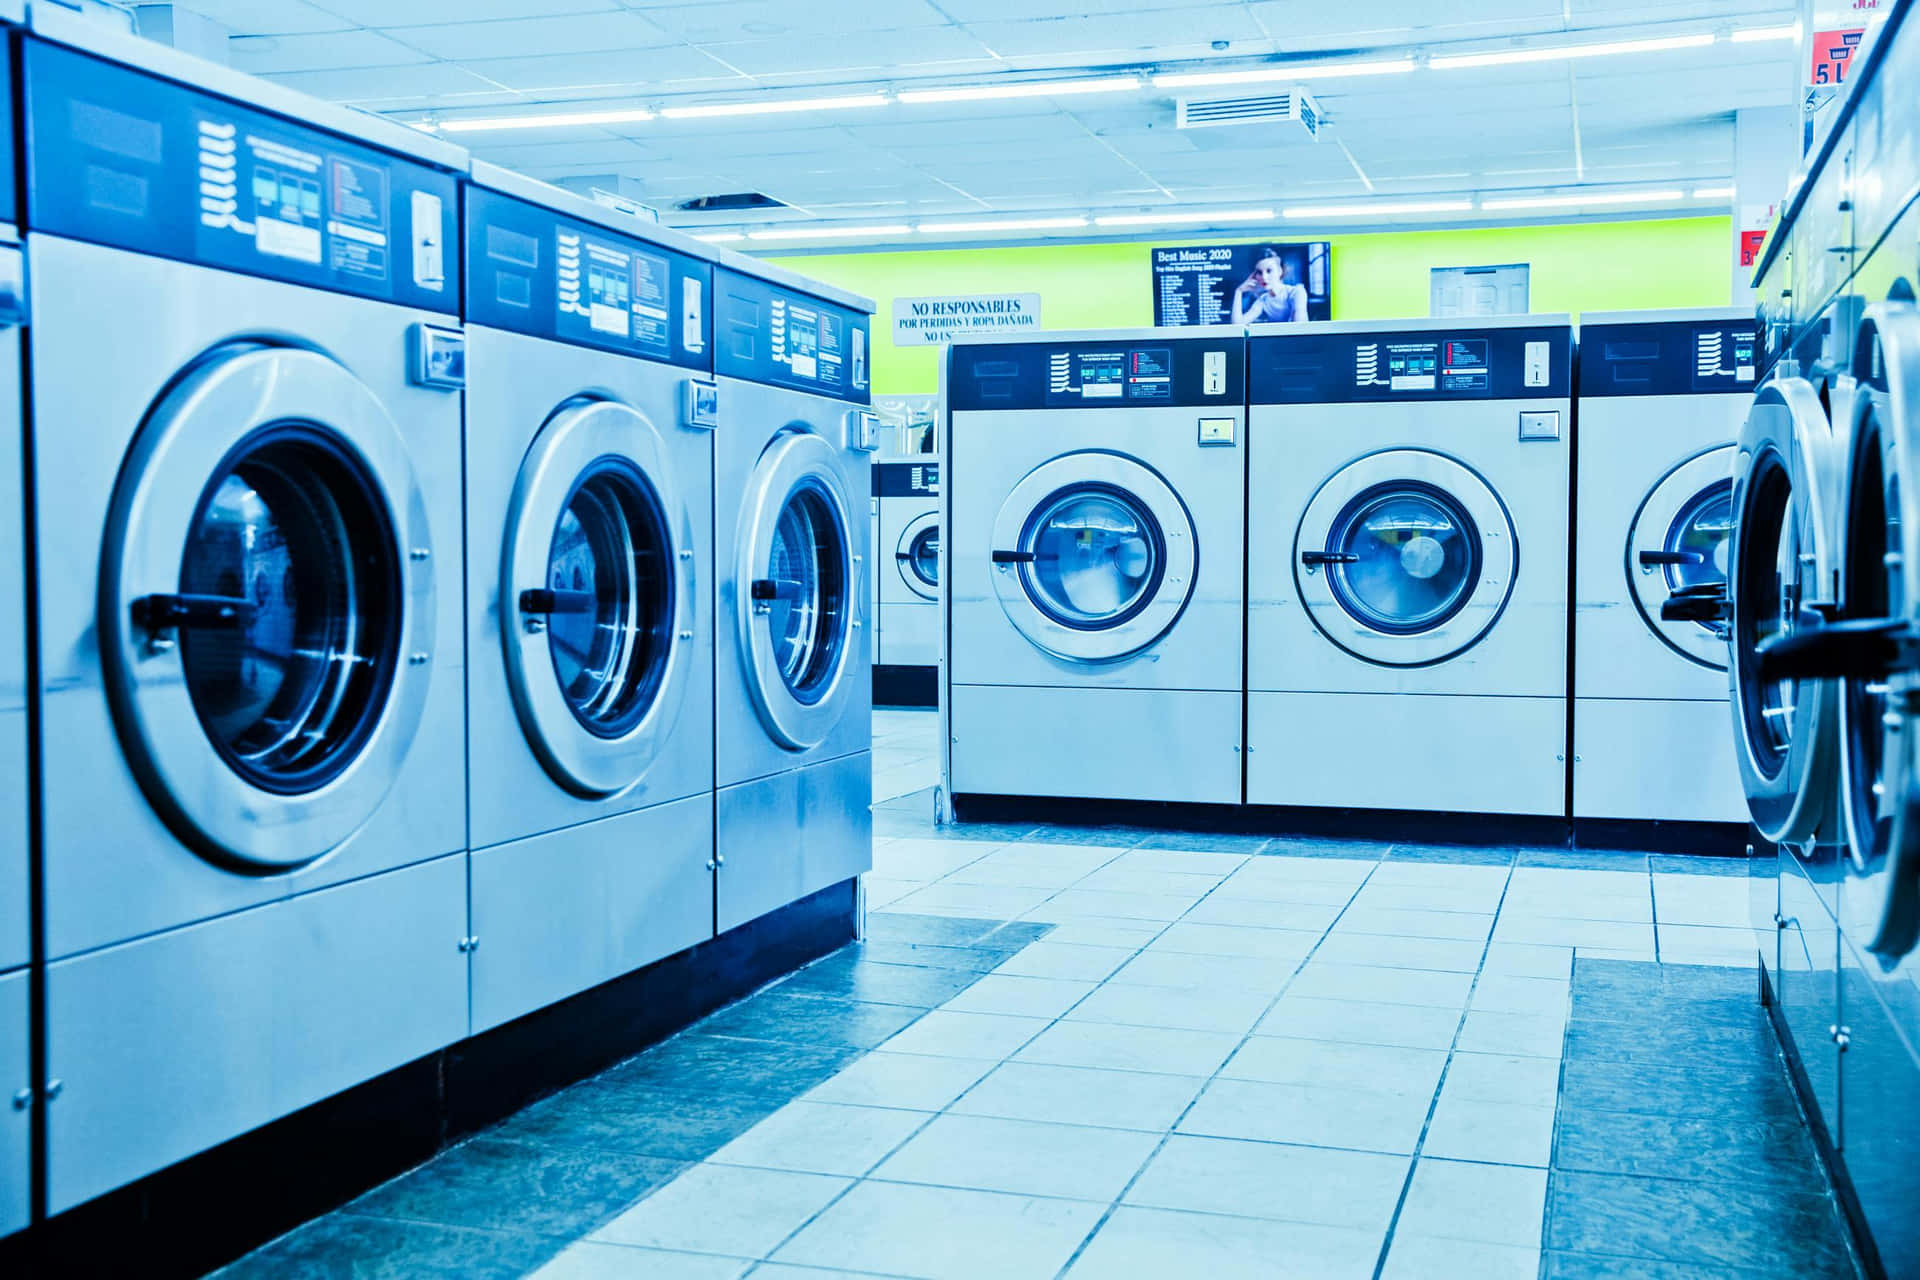 Laundromat Rowof Washing Machines